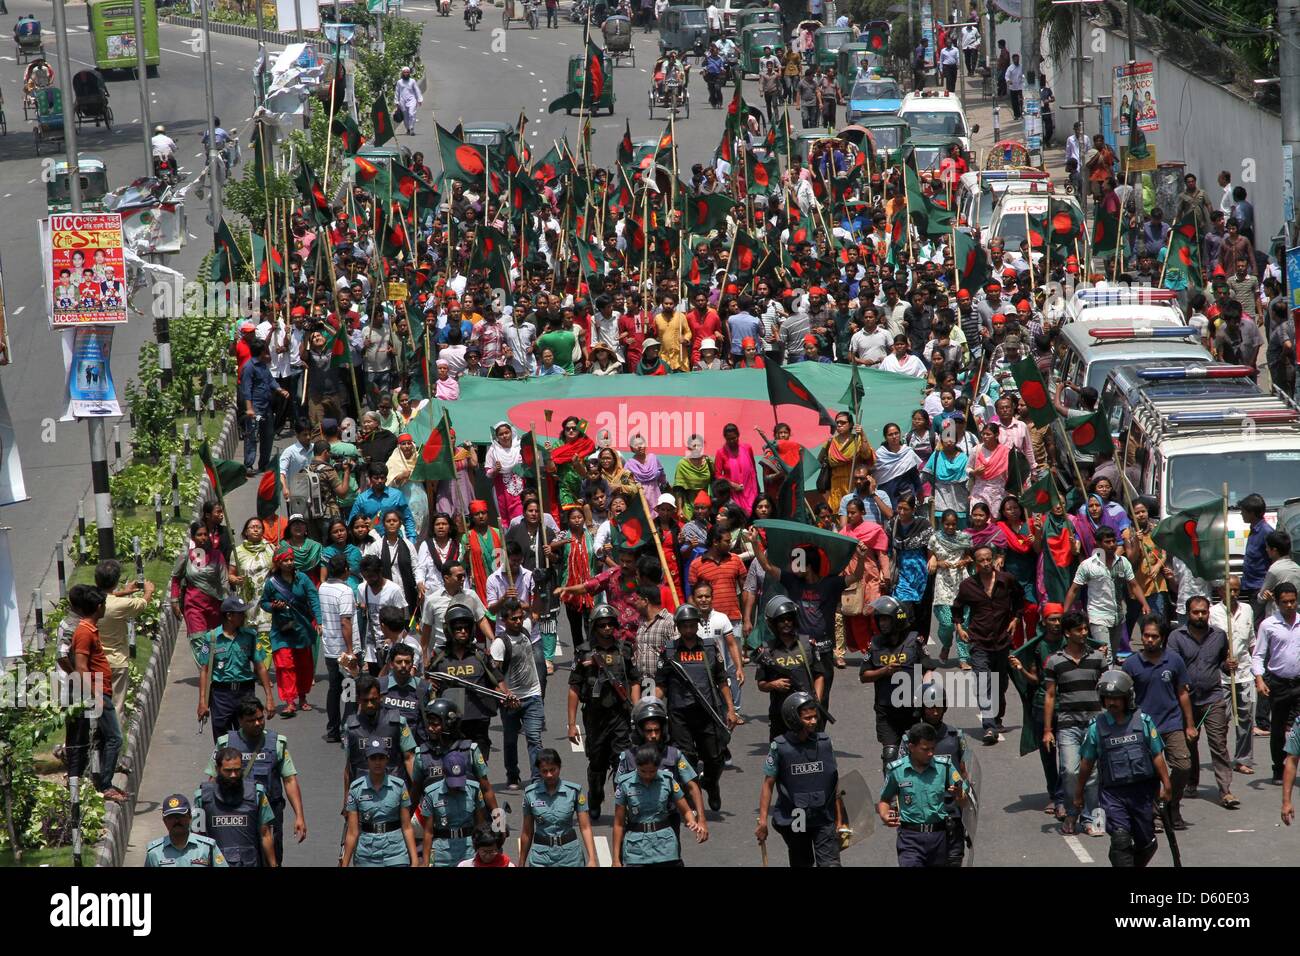 Dhaka, Bangladesh. Le 8 avril 2013. Les manifestants crier des slogans et des Bangladais portent les drapeaux nationaux à un rassemblement anti-grève pendant une grève déclenchée par les islamistes à Dhaka le 8 avril 2013. Organistaion islamiste, Hefajat-e-Islam a appelé une grève nationale d'appuyer sur le Parlement de promulguer une loi visant à blasphmey poursuivre les blogueurs accusés d'avoir insulté l'Islam et le prophète Mohammed dans le pays à majorité musulmane. Banque D'Images